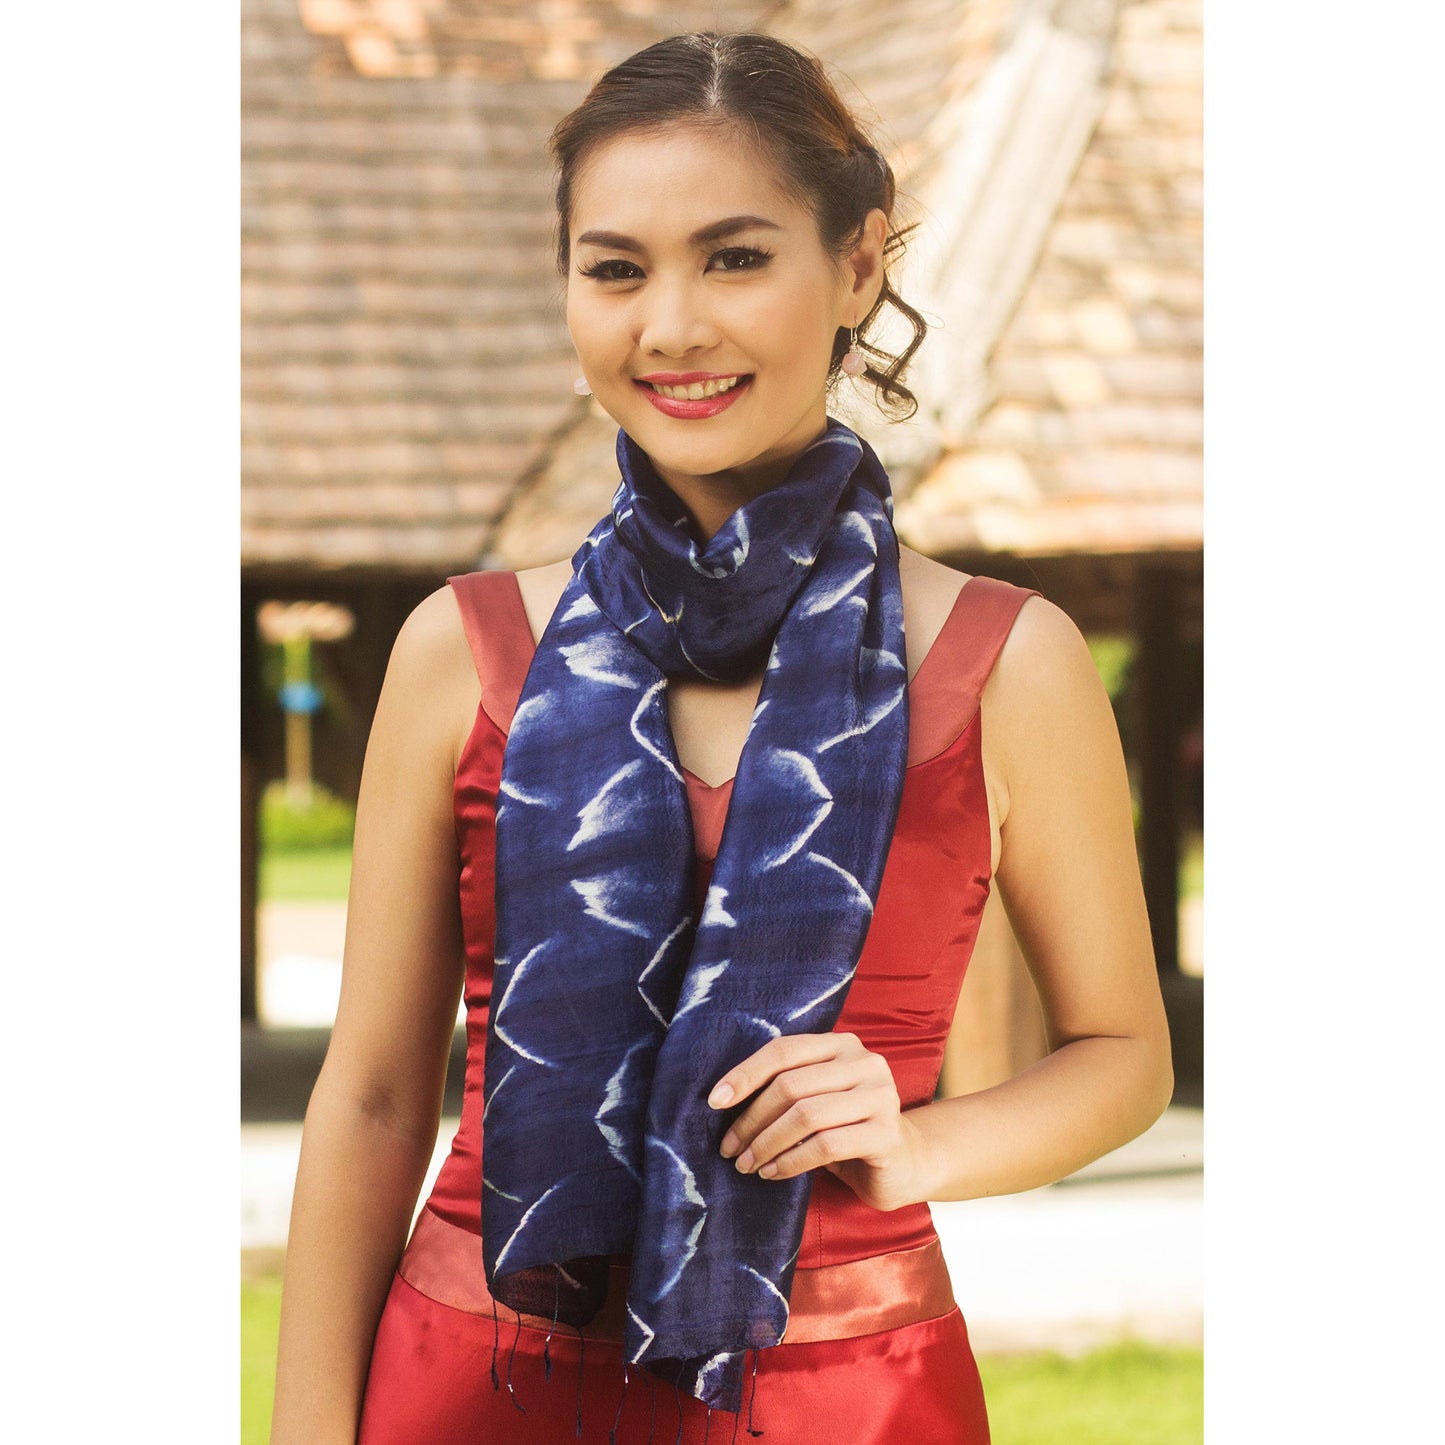 Sapphire Mystique Silk scarf